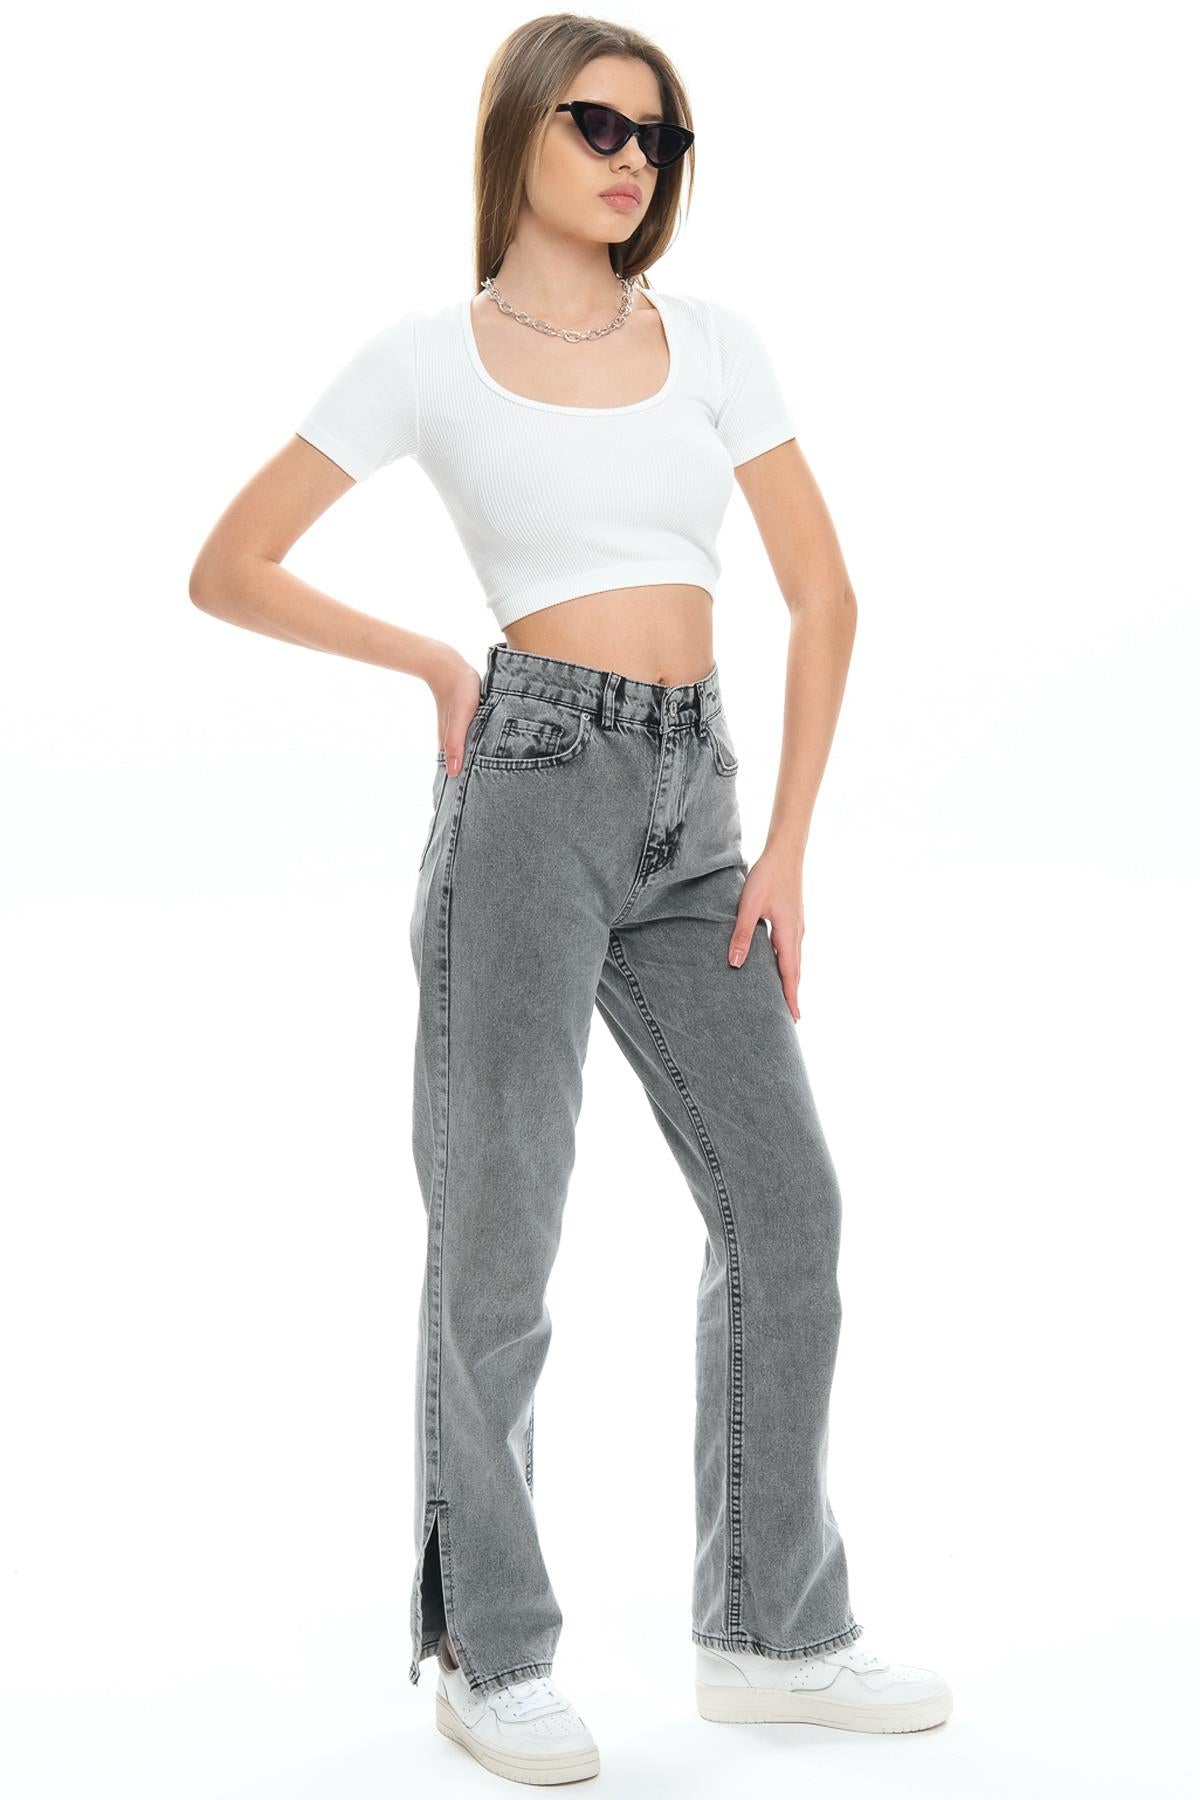 Beş cep Yüksek Bel Paçası Yırtmaçlı Mom Fit Jeans Kot Kadın Pantolon